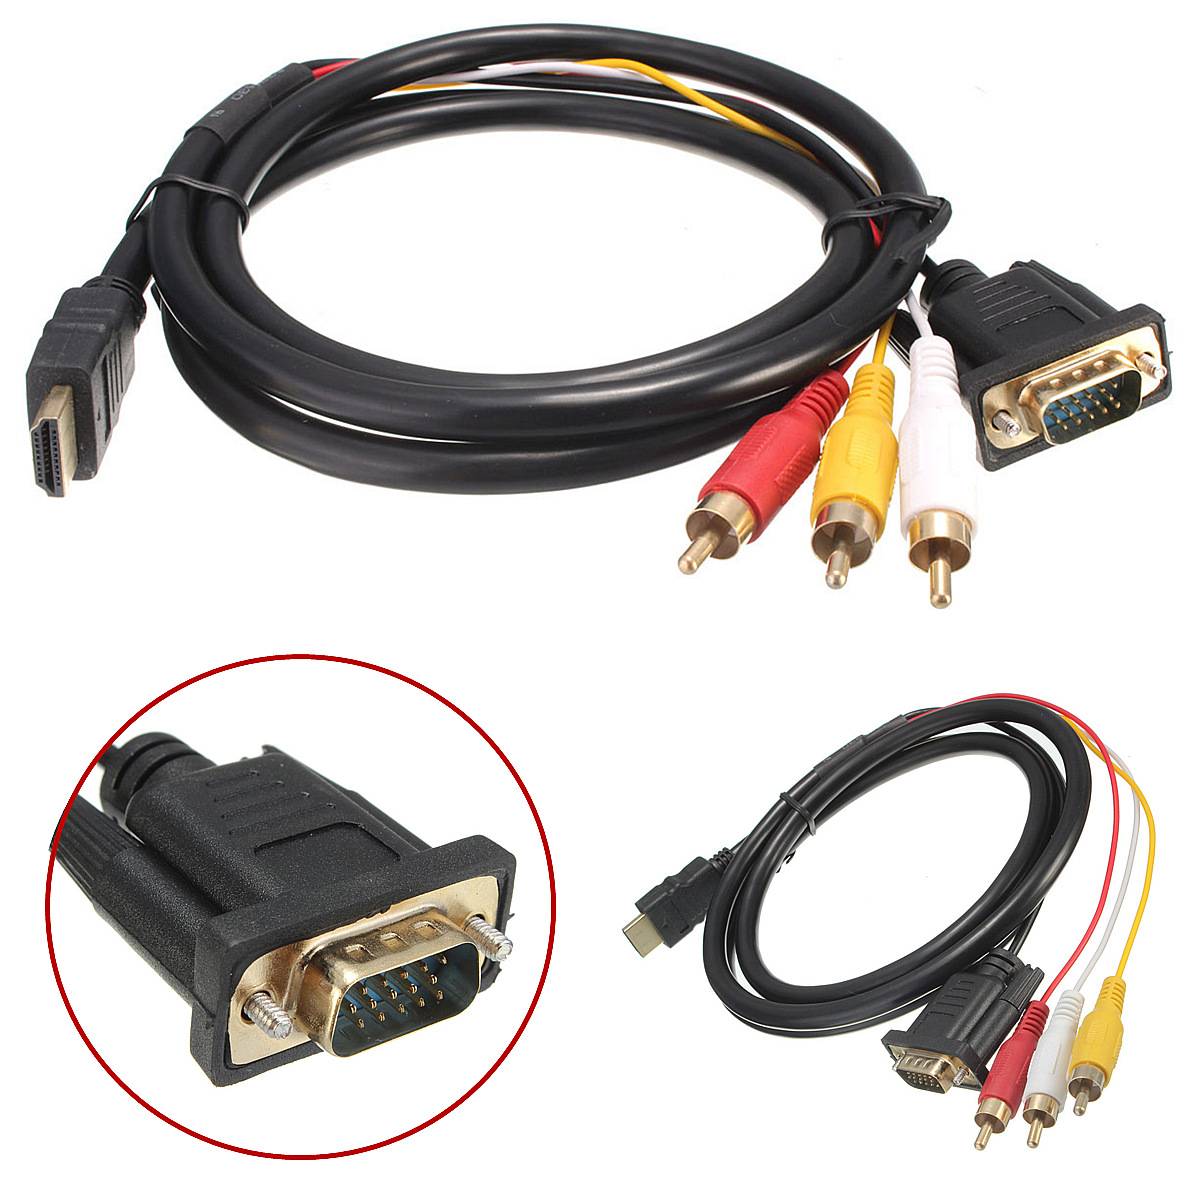 Hdmi support. Cable соединительный кабель VGA HDMI 2. Кабель HDMI- DVI+2 RCA. Кабель 3 RCA - VGA для монитора. Переходник VGA-3rca для подключения монитора.